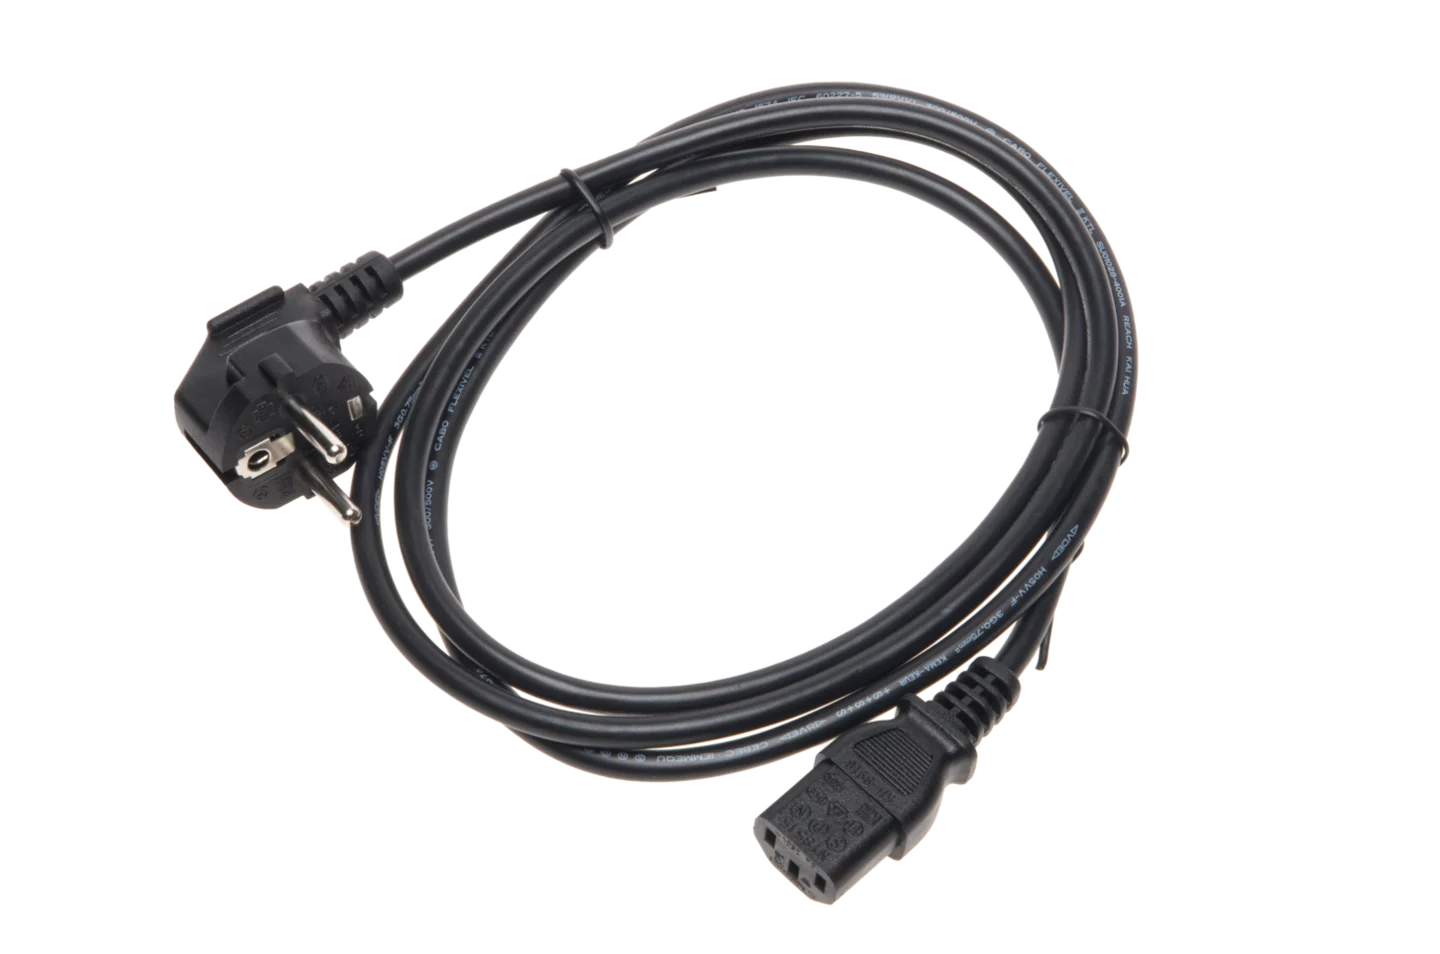 Mains power cable 230 V (IEC C13 plug)